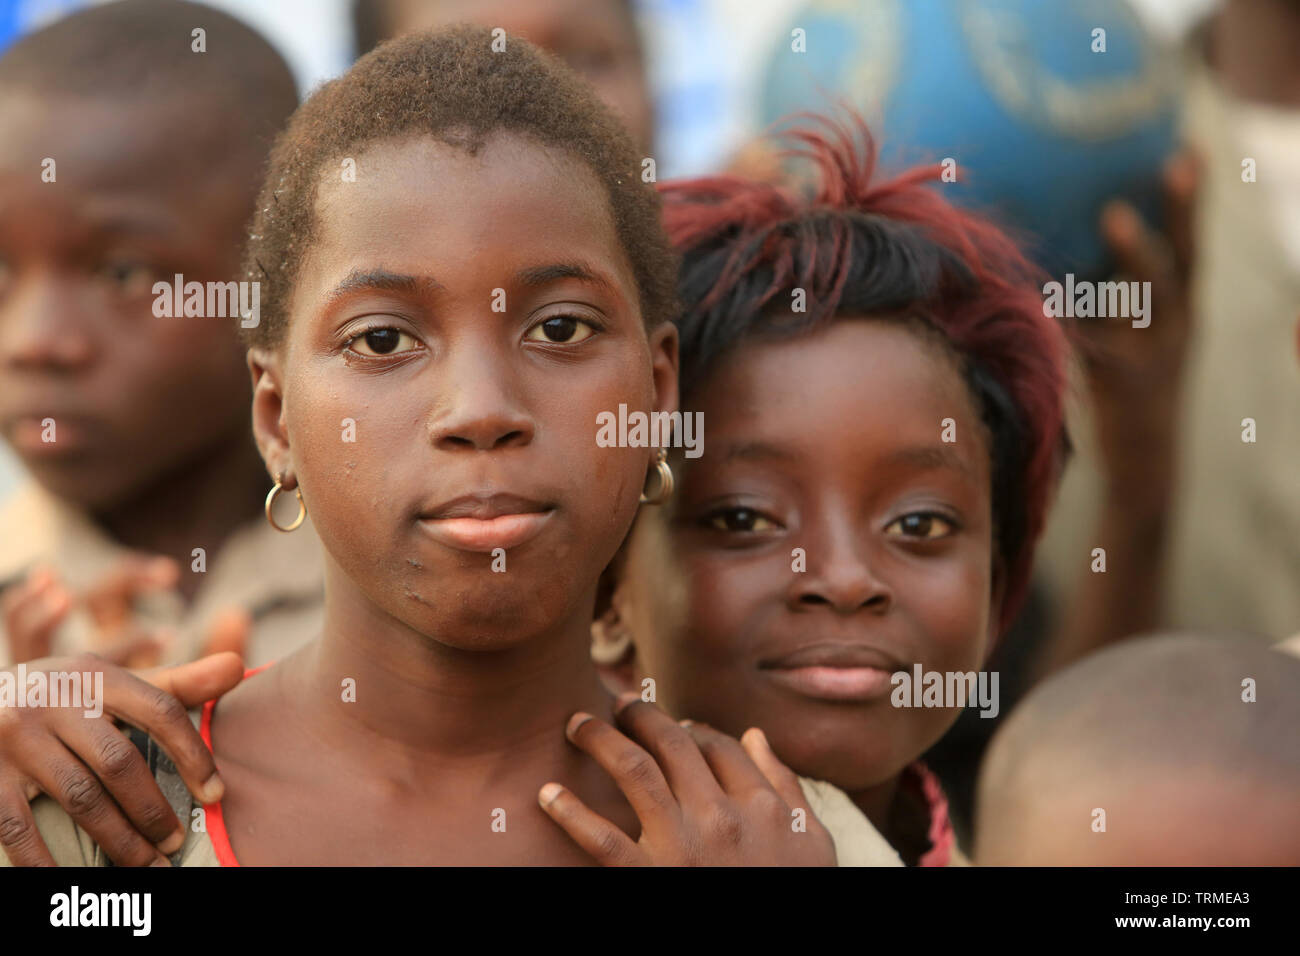 Ecolières. La convenzione di Lomé. Il Togo. Afrique de l'Ouest. Foto Stock